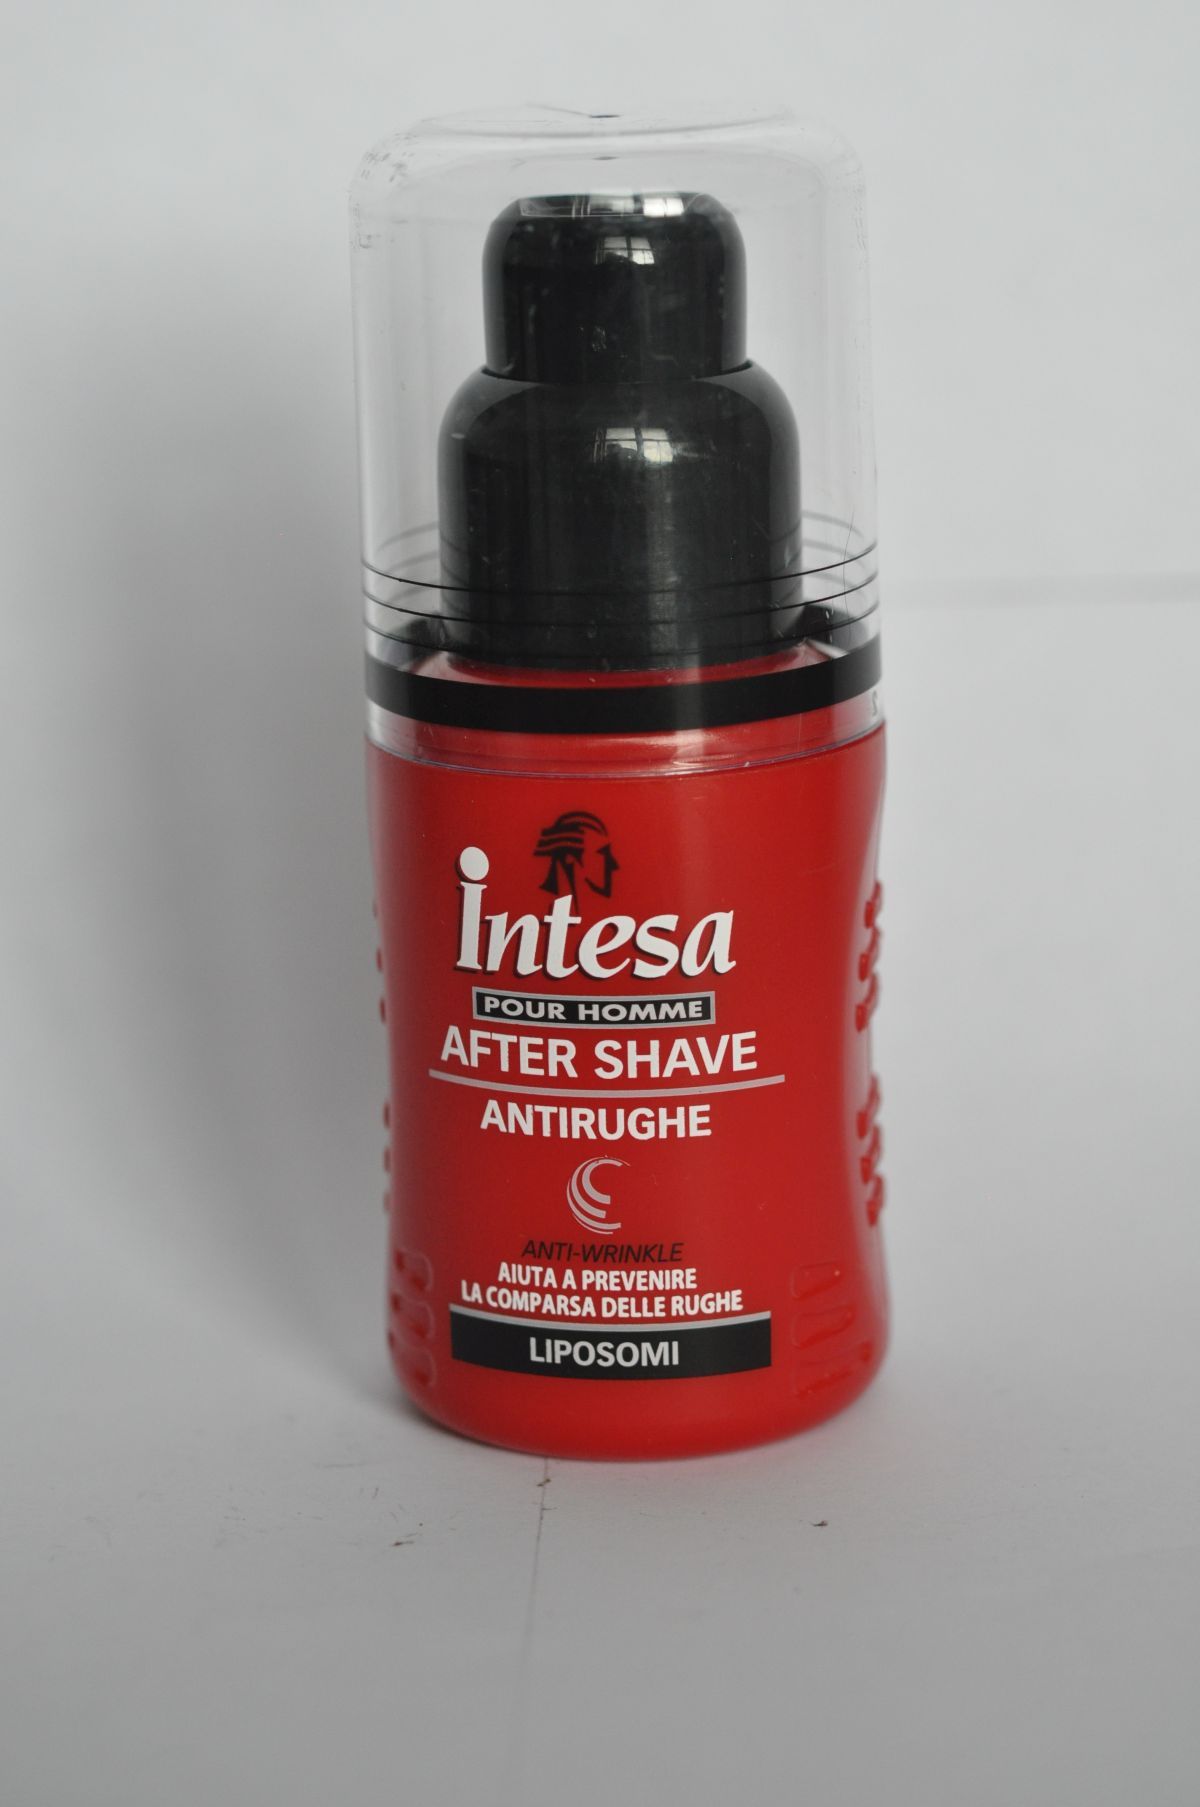 After shave antirughe – výrobok po holení